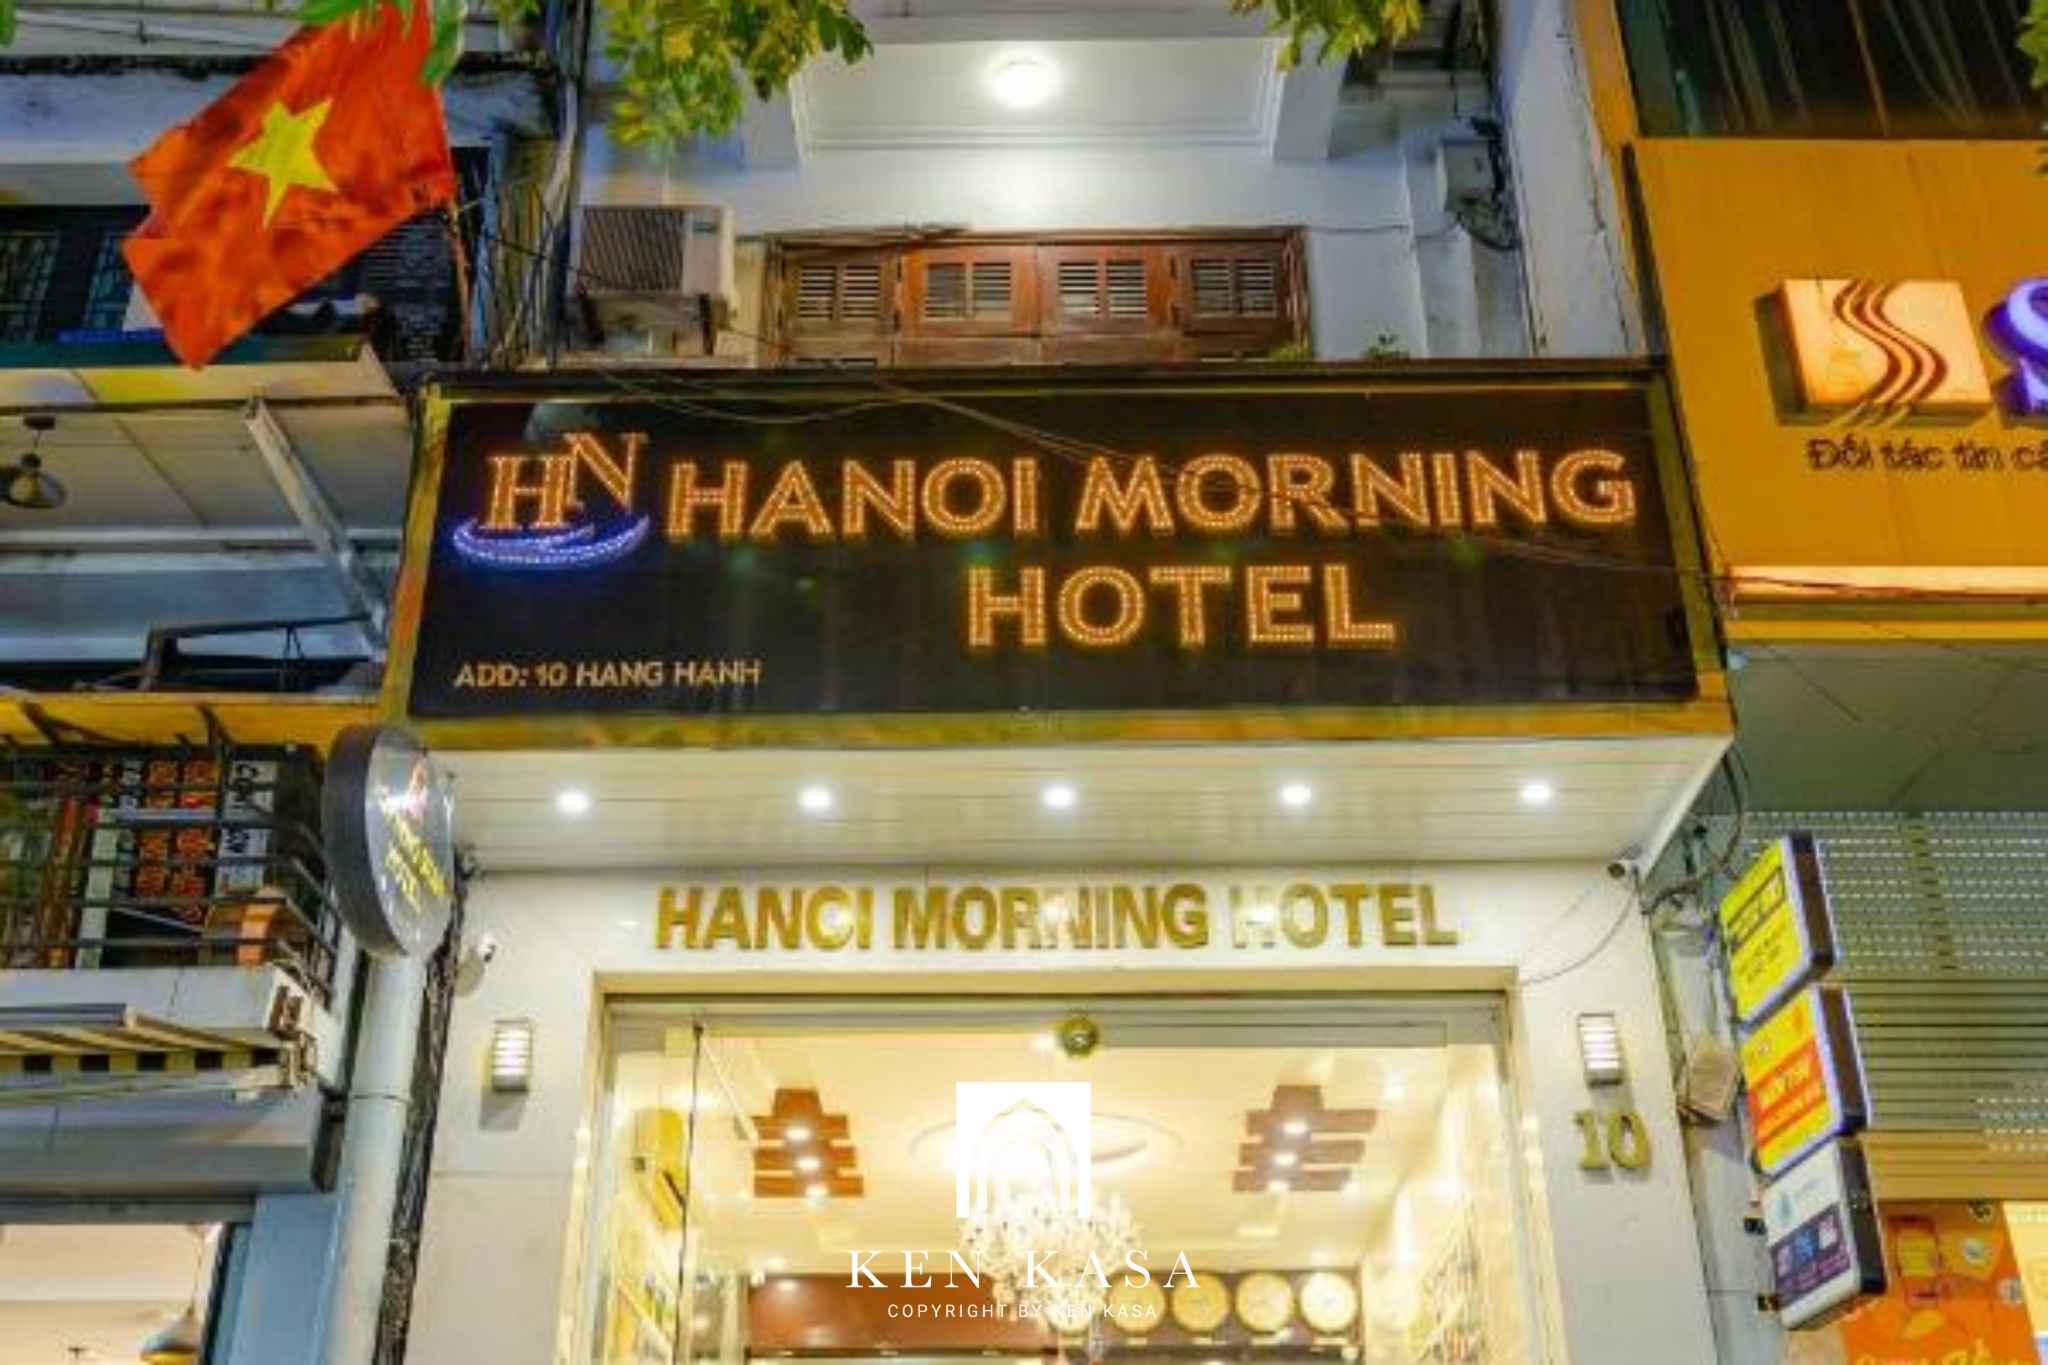 Thiết kế tại Hà Nội Morning Hotel 